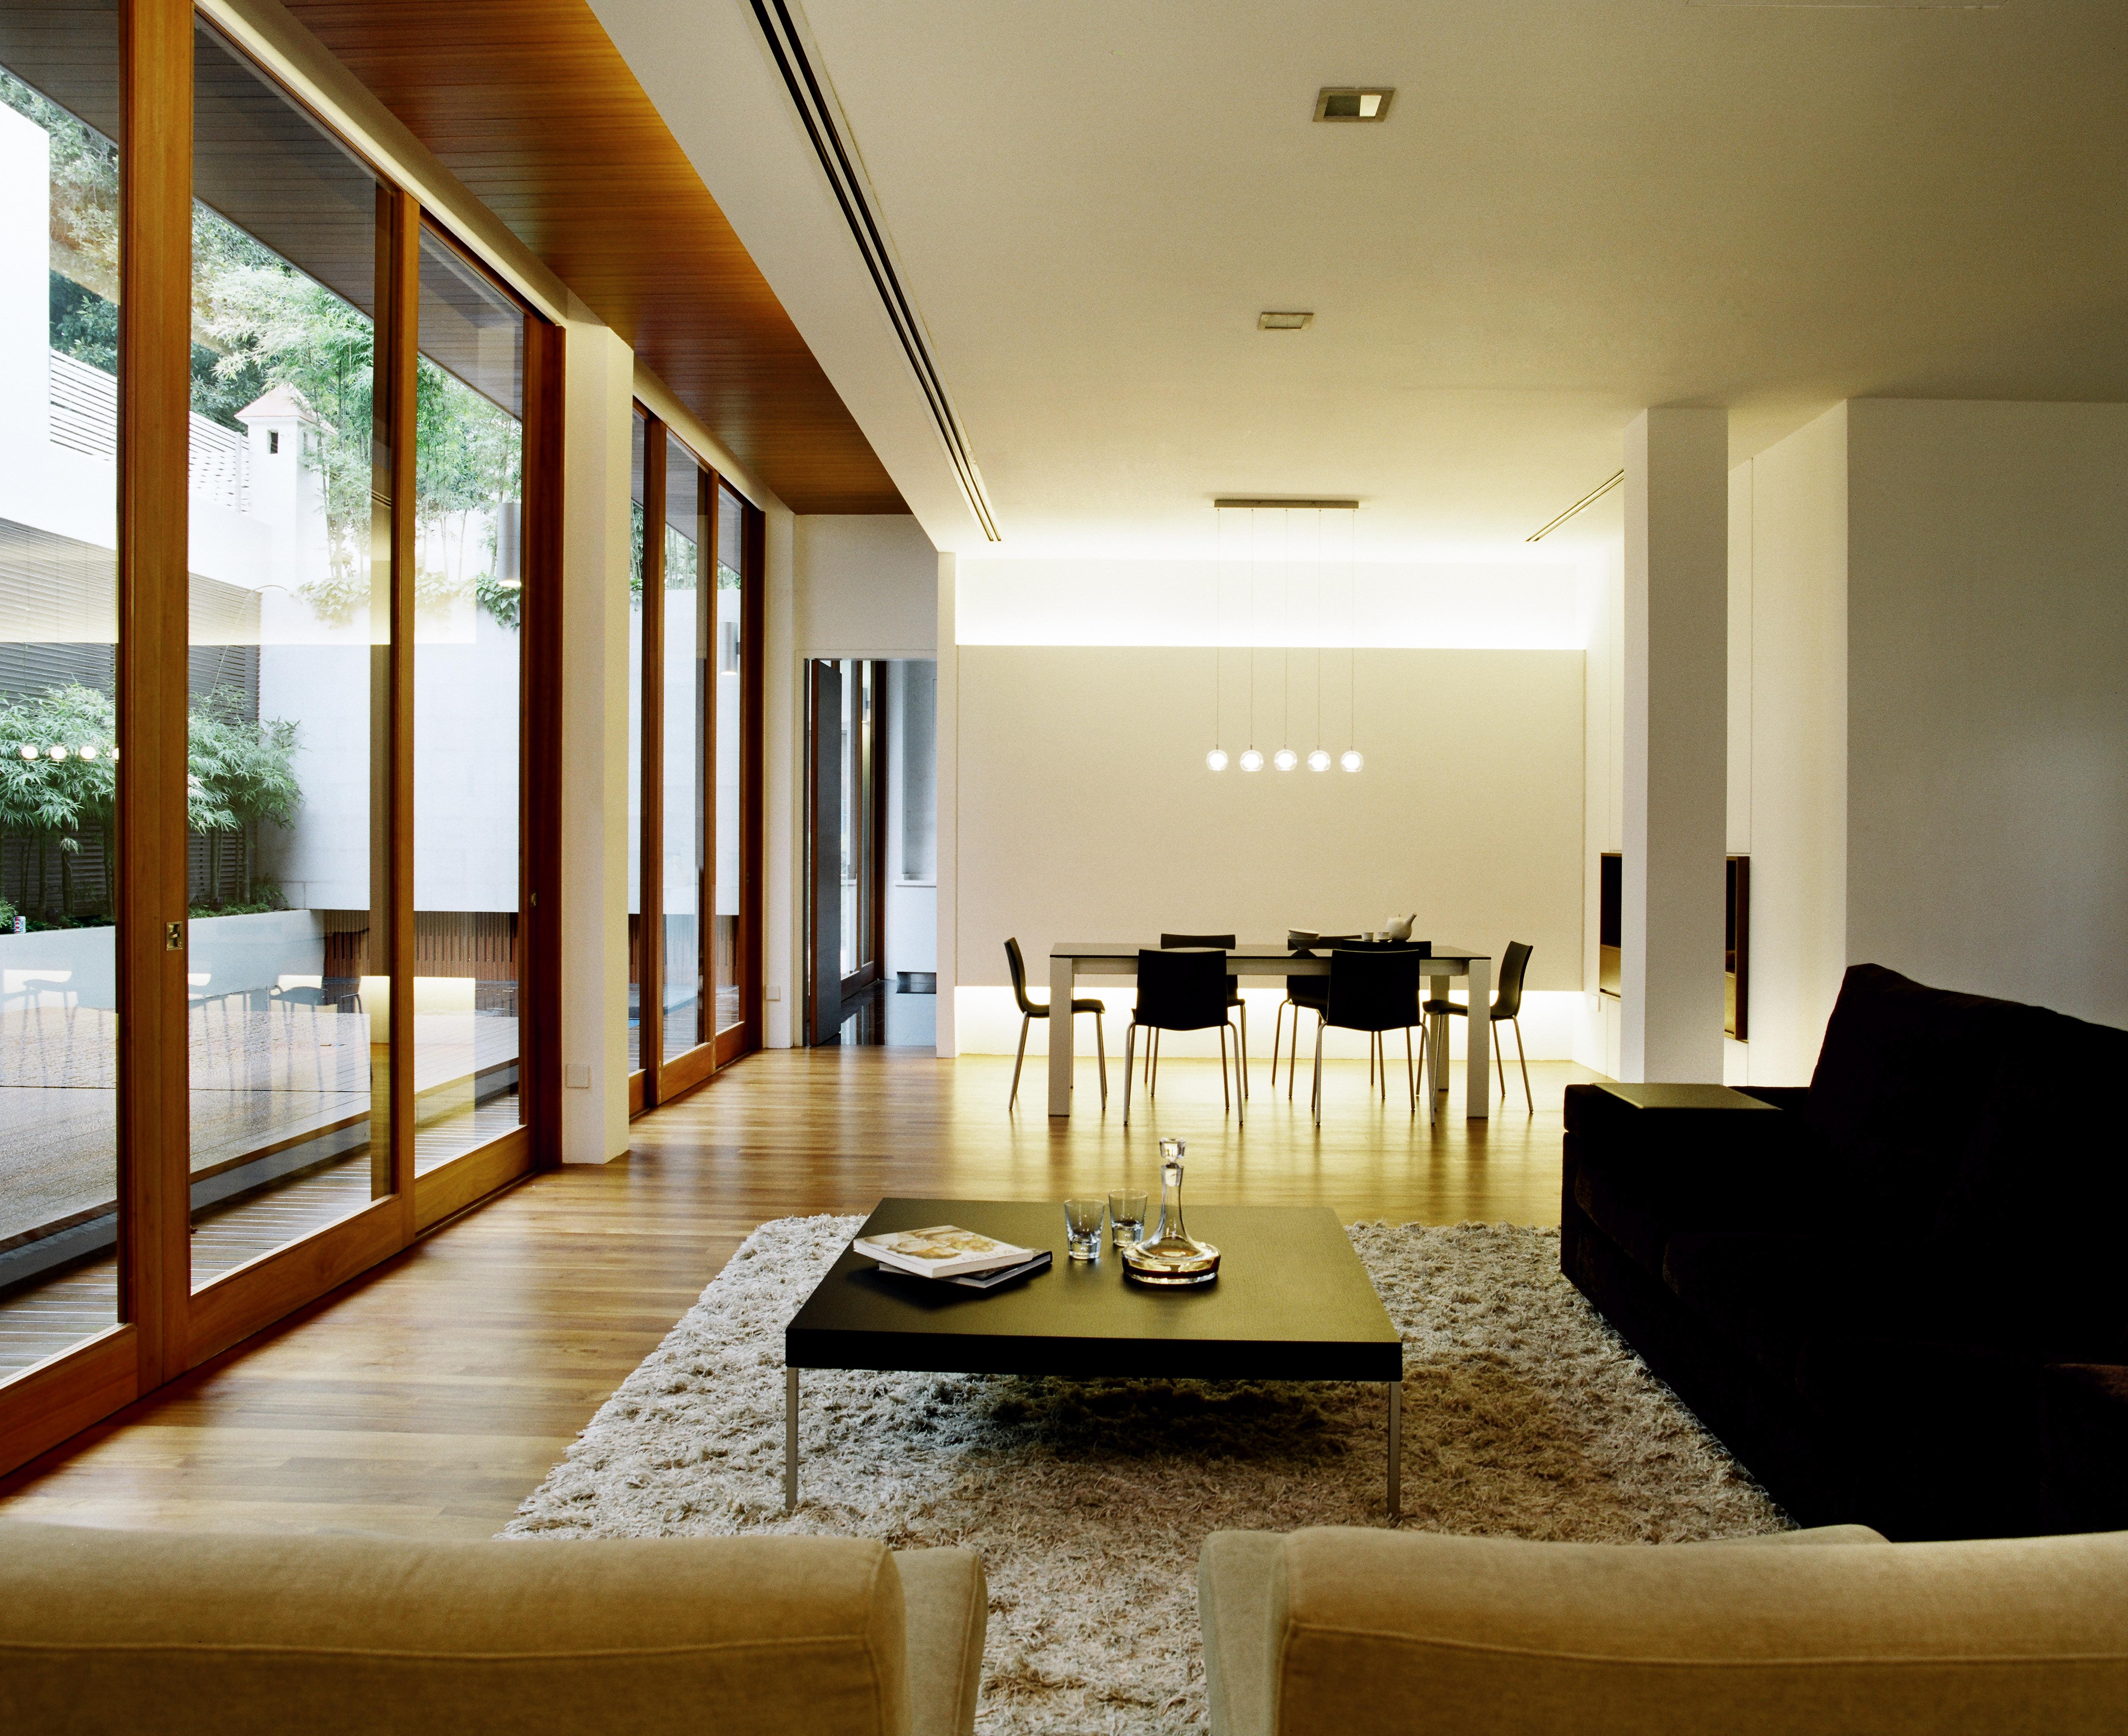 客厅位于与用餐区共享的开放空间，左侧有天然木框架玻璃露台入口。黑色沙发和一对驼色的椅子放在硬木地板上的厚地毯上，中间是金属和黑色木材的咖啡桌。